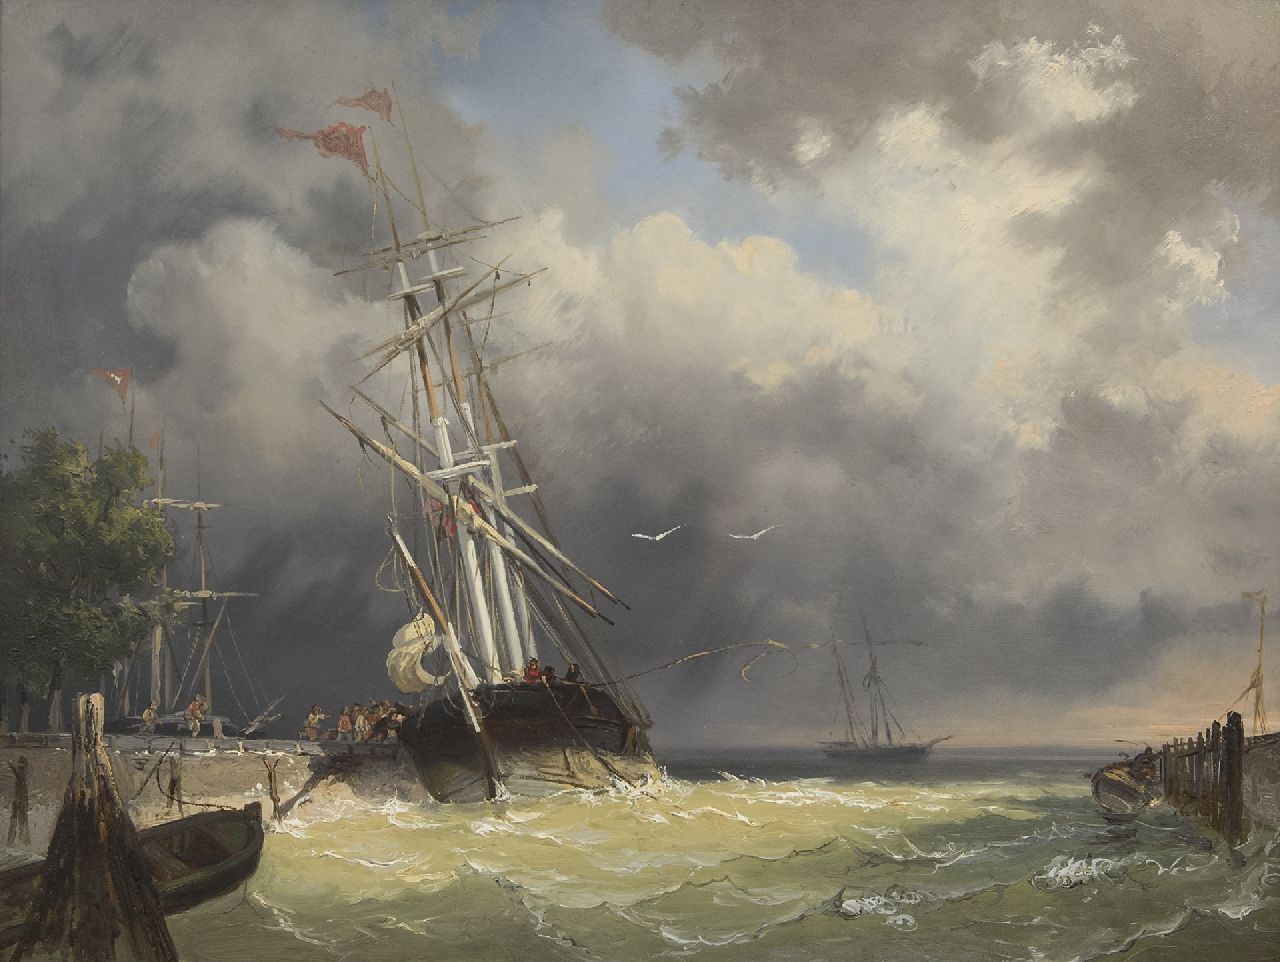 Frans Arnold Breuhaus de Groot | Binnenvarende driemaster bij storm, olieverf op paneel, 44,4 x 59,5 cm